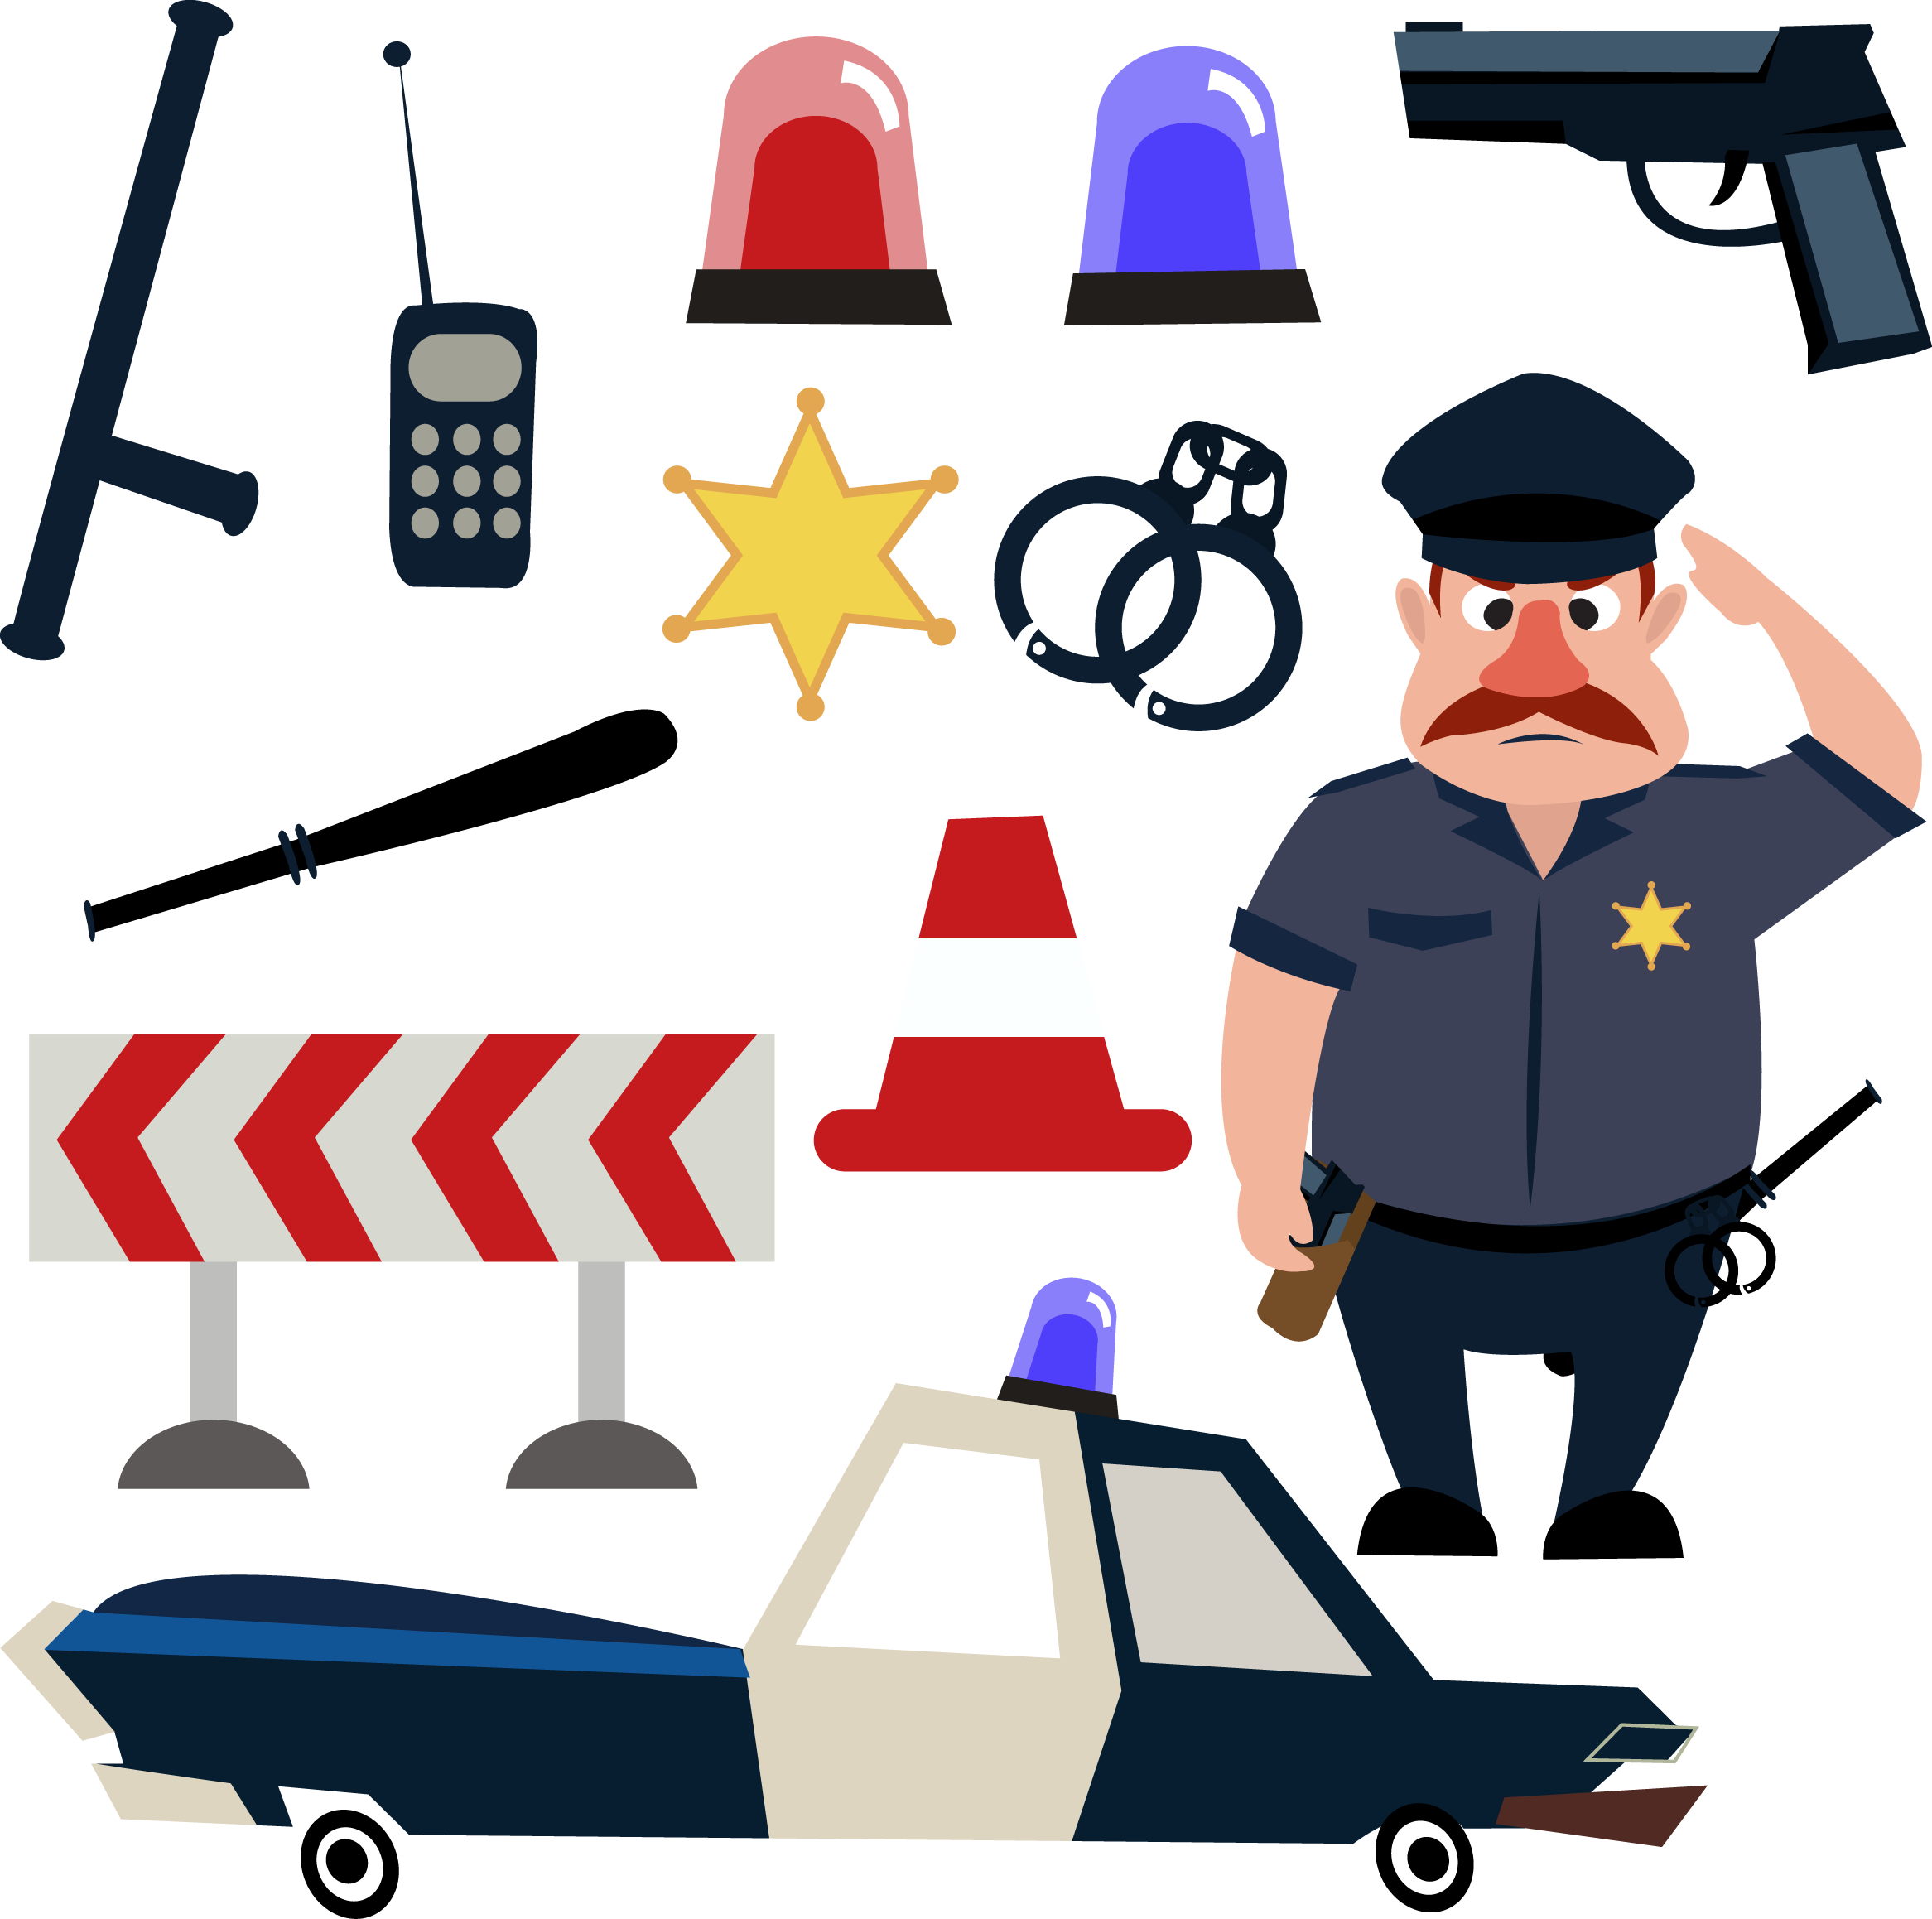 Police Officer Cartoon Illustration - Police Officer Tools (2333x2317)